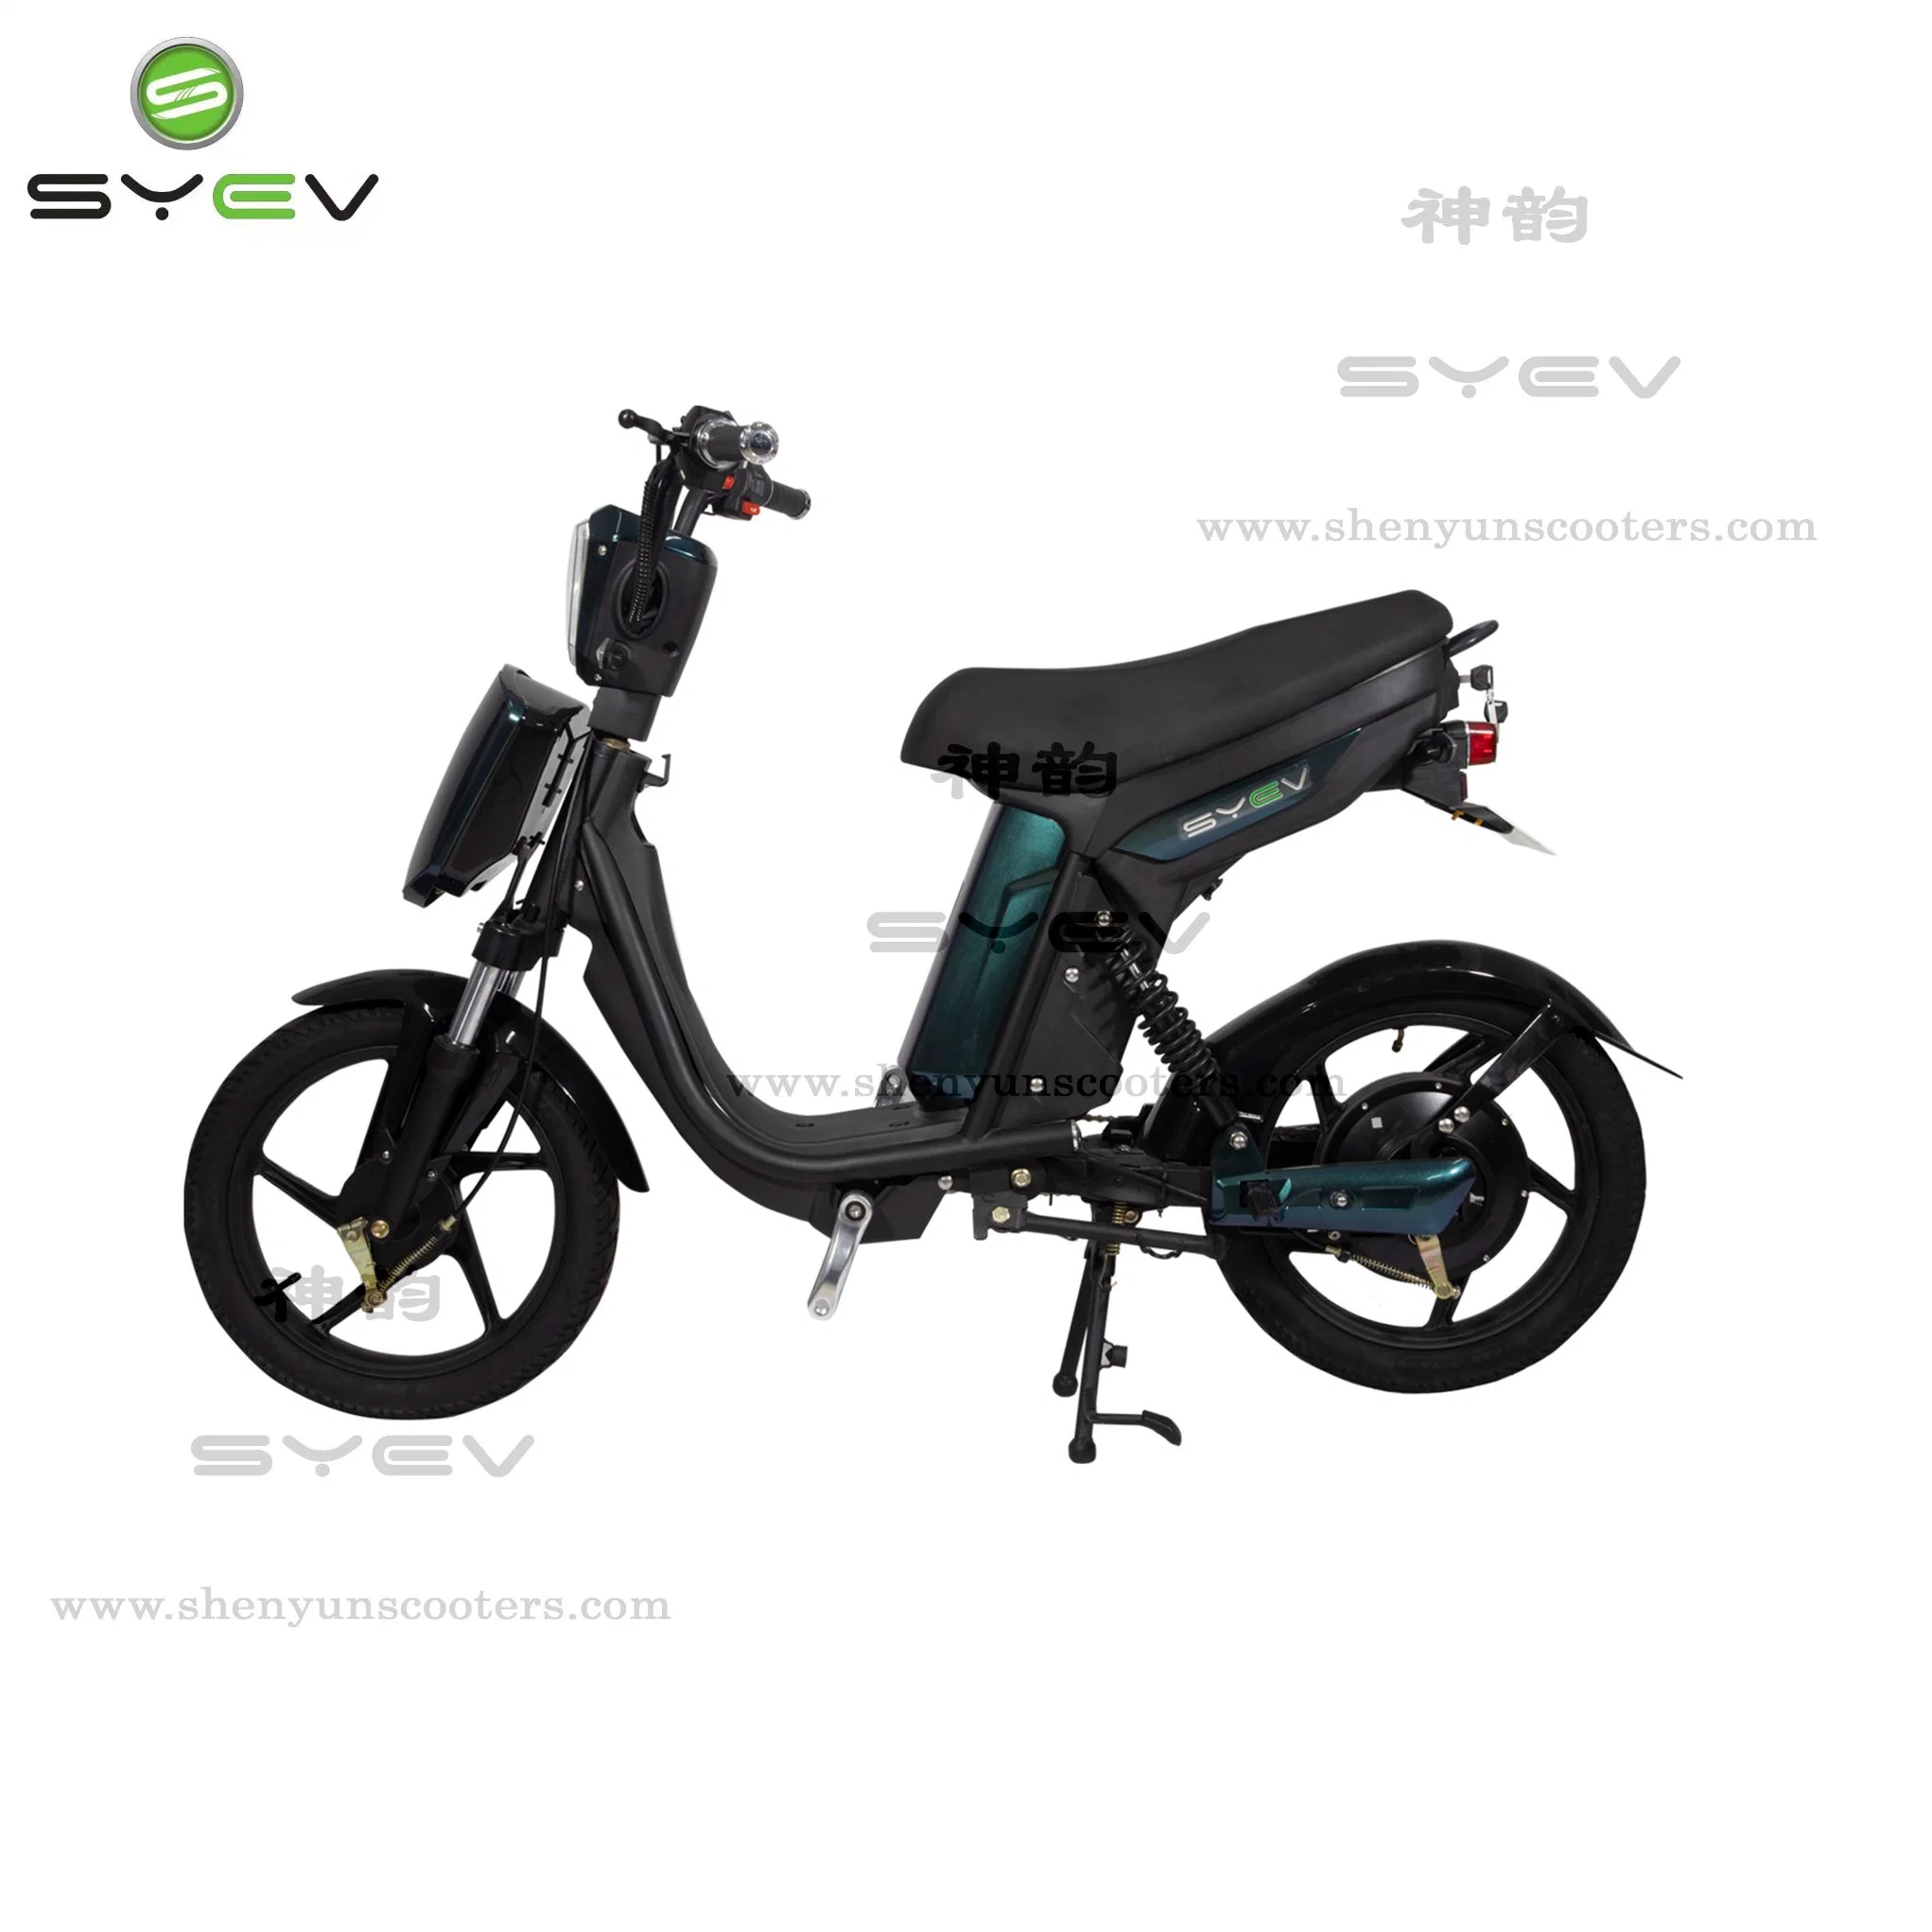 Syev верхней части продажи велосипедов с электроприводом высокого качества 350W 2 Колеса дешевые цены E-Скутер